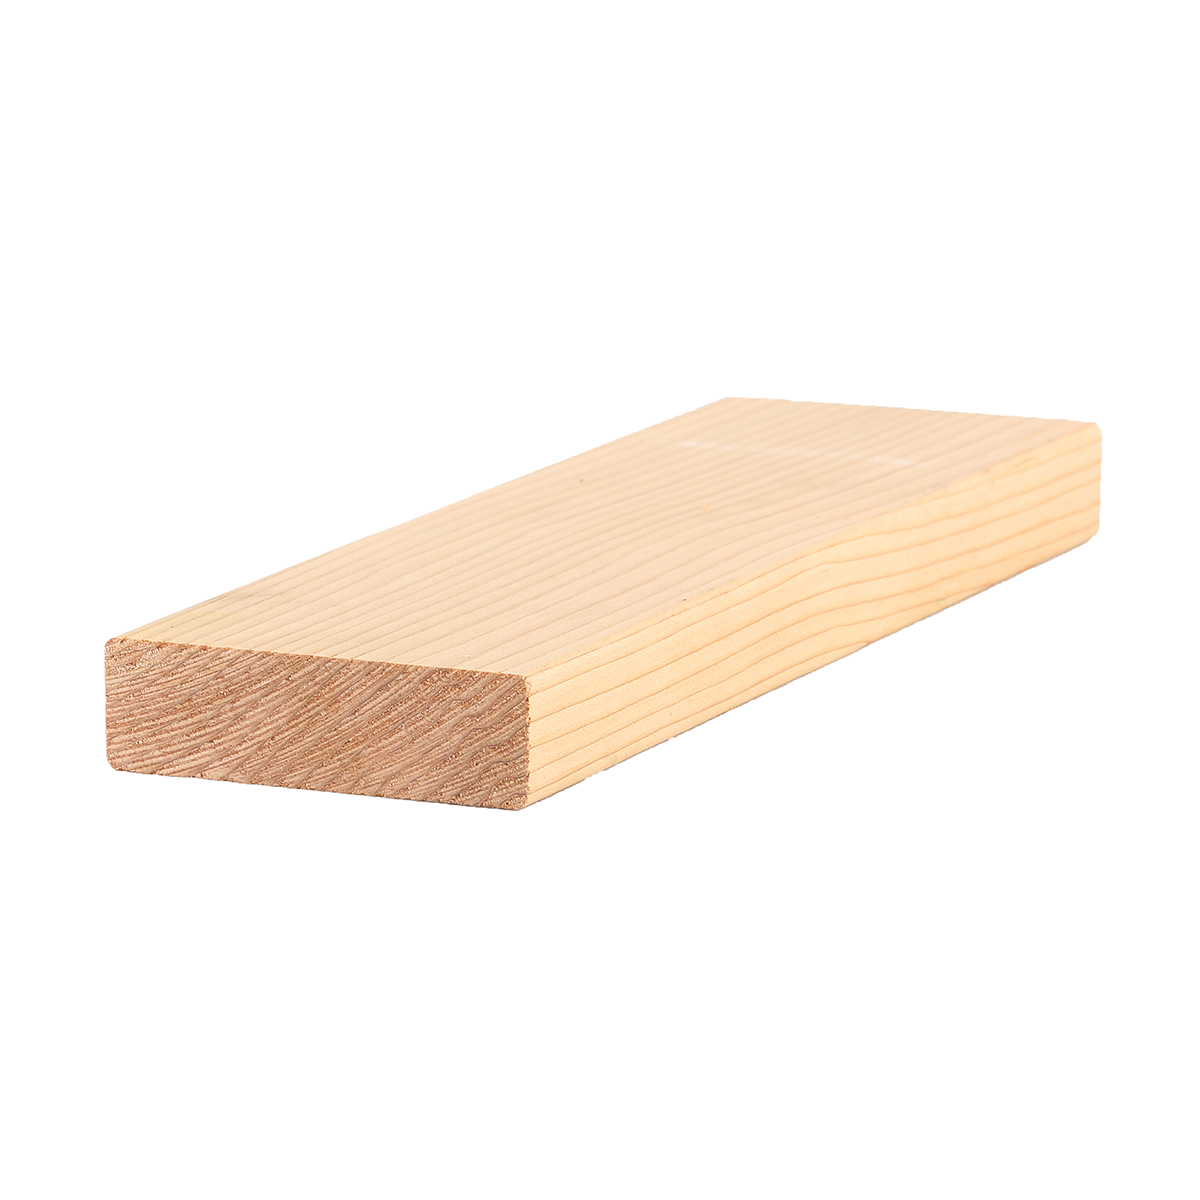 1 X 3 1 2 Clear Western Red Cedar Lumber 5 4x4